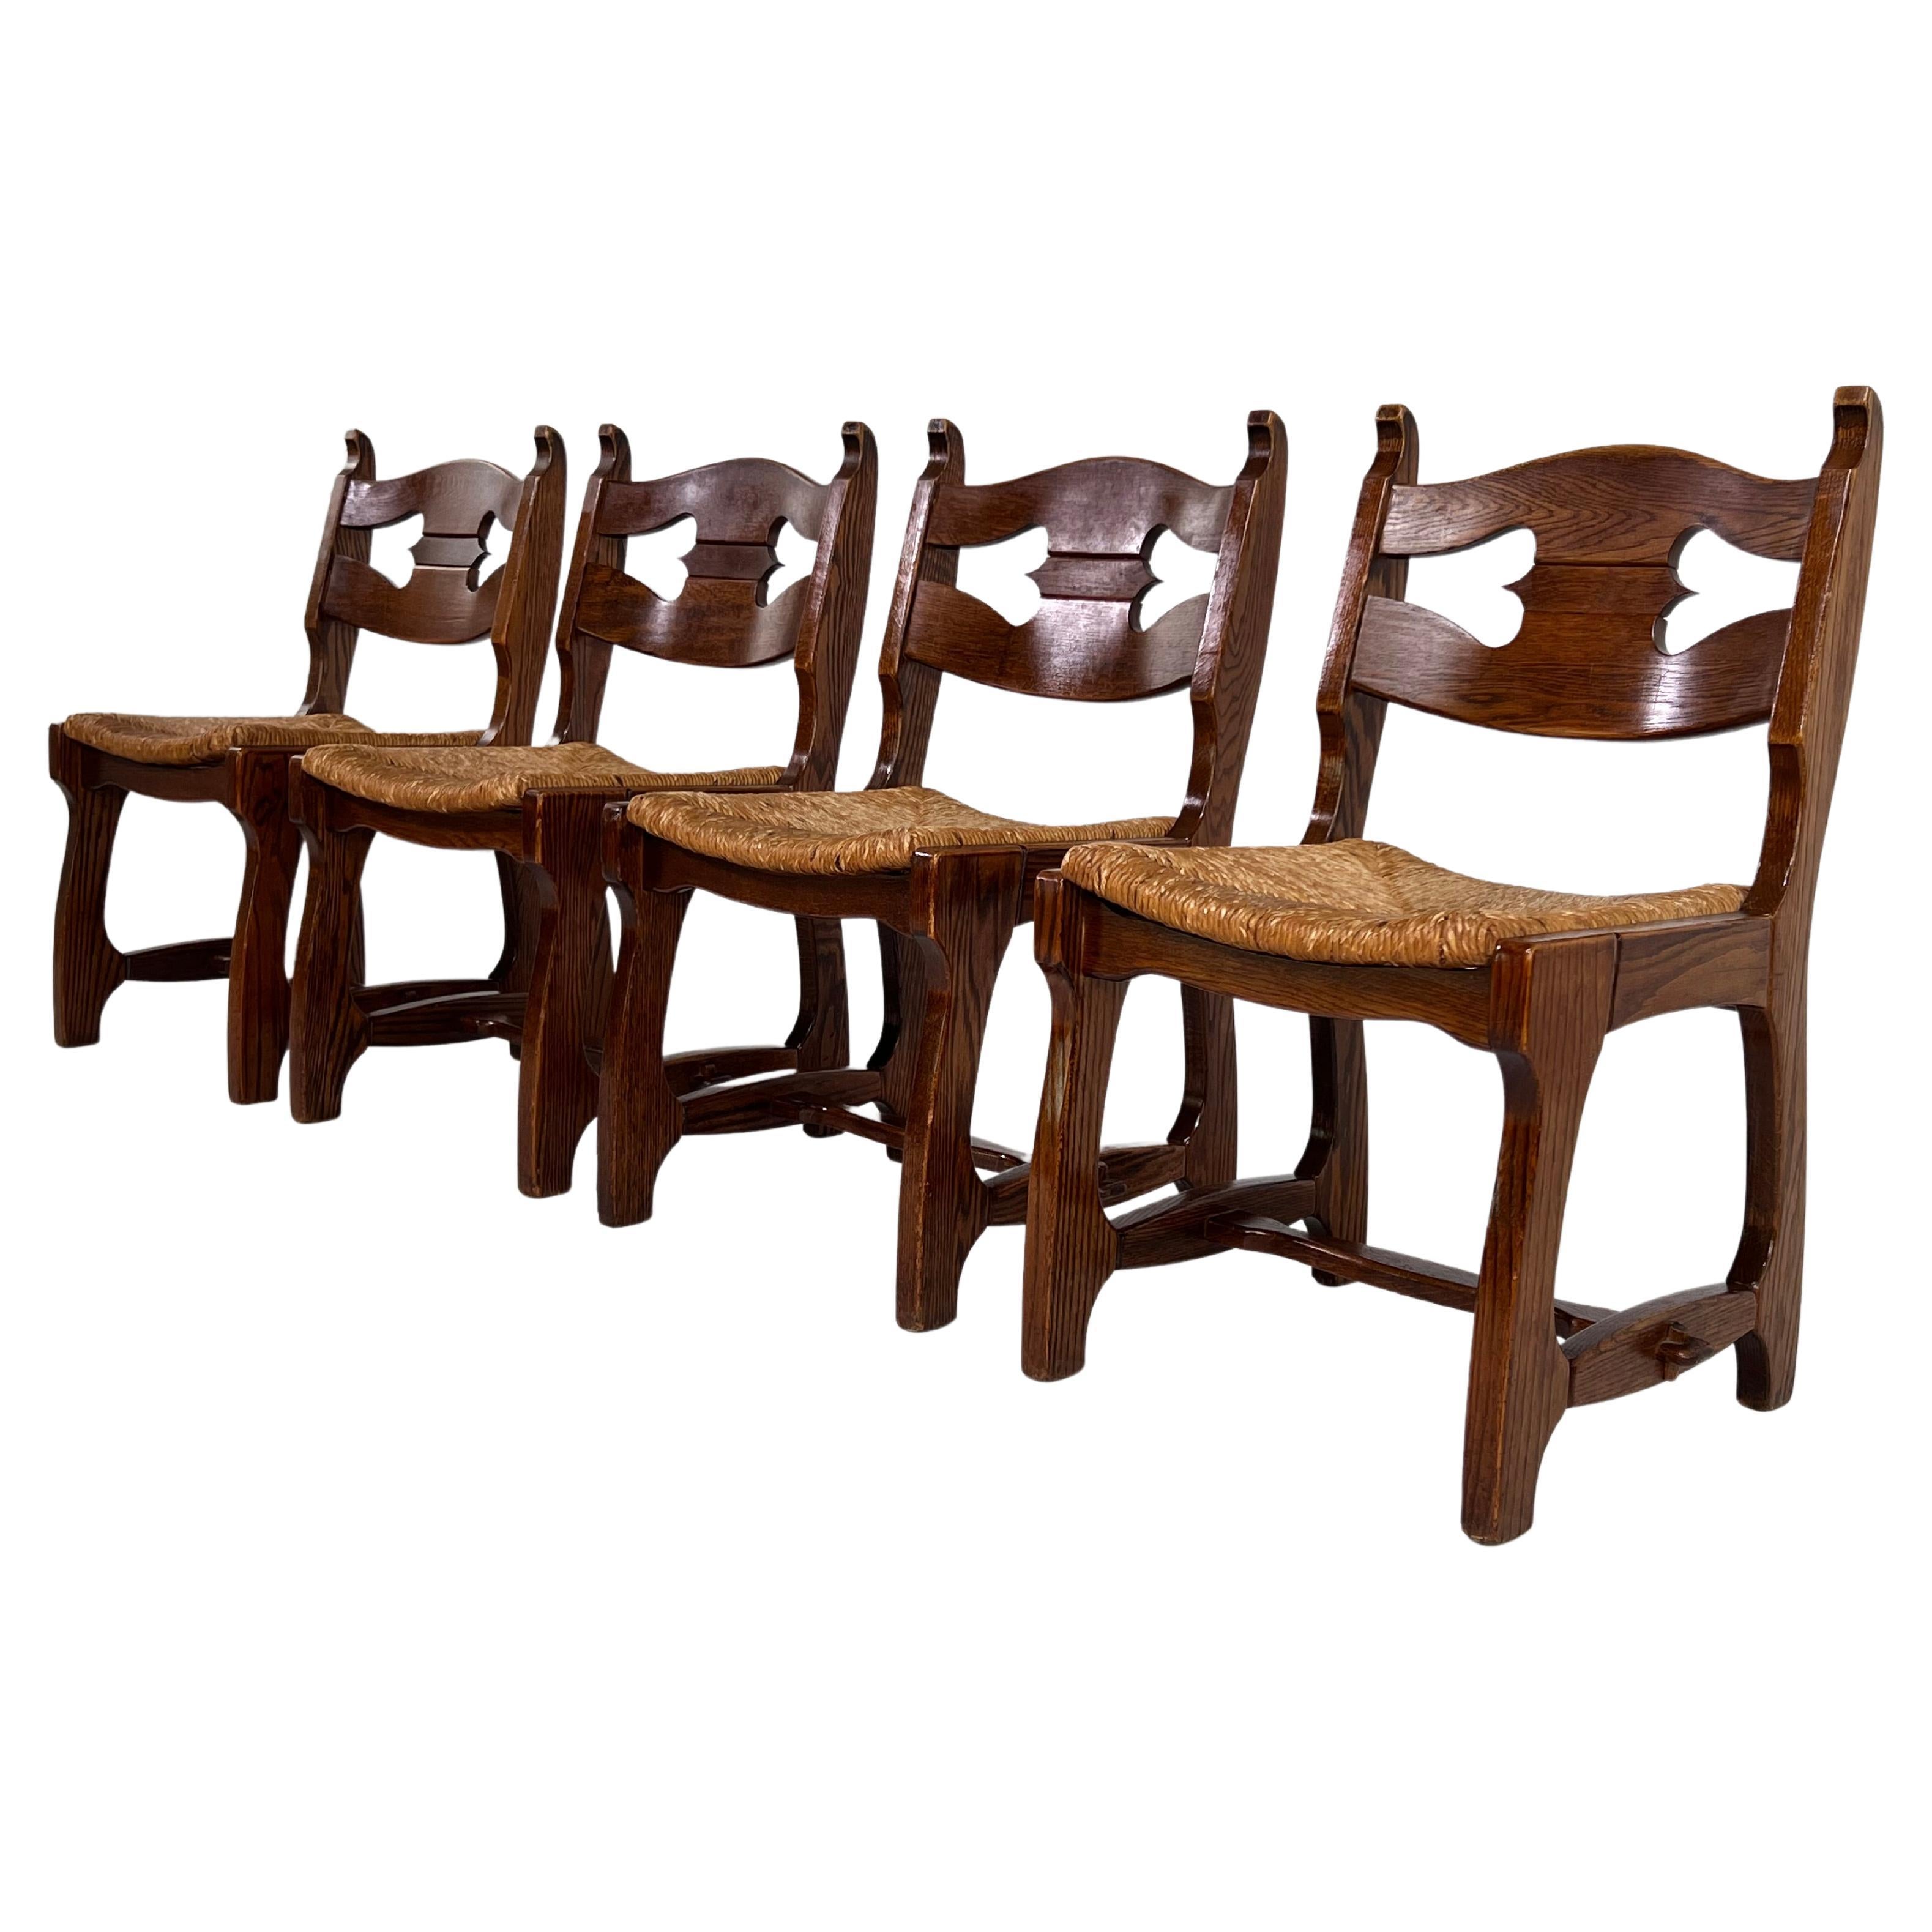 1950er Jahre Design OAK Holz und geflochtene Strohsitze Satz von 4 Stühlen